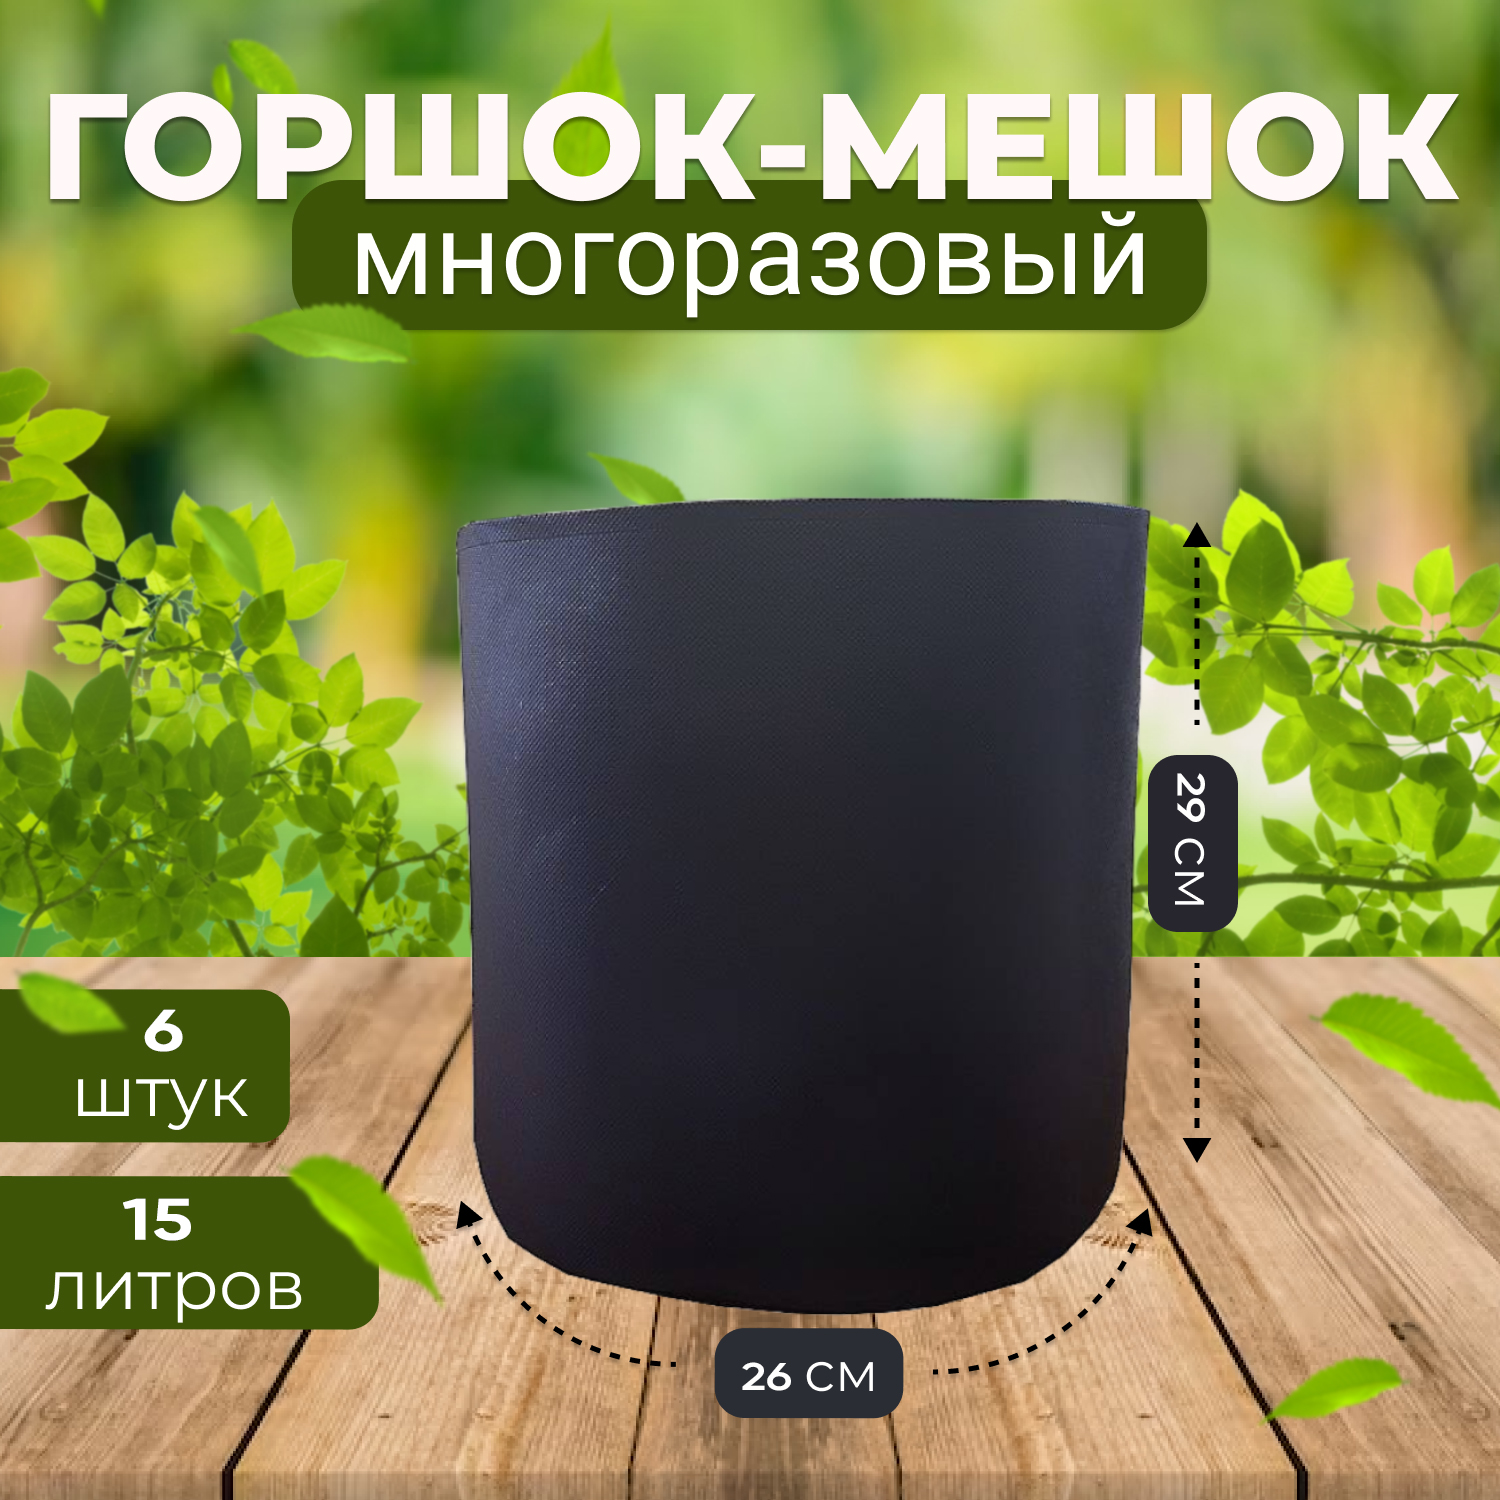 Горшок мешок тканевый из спанбонда Grower Green 15_litrov-G_6 15 литров, 6шт.